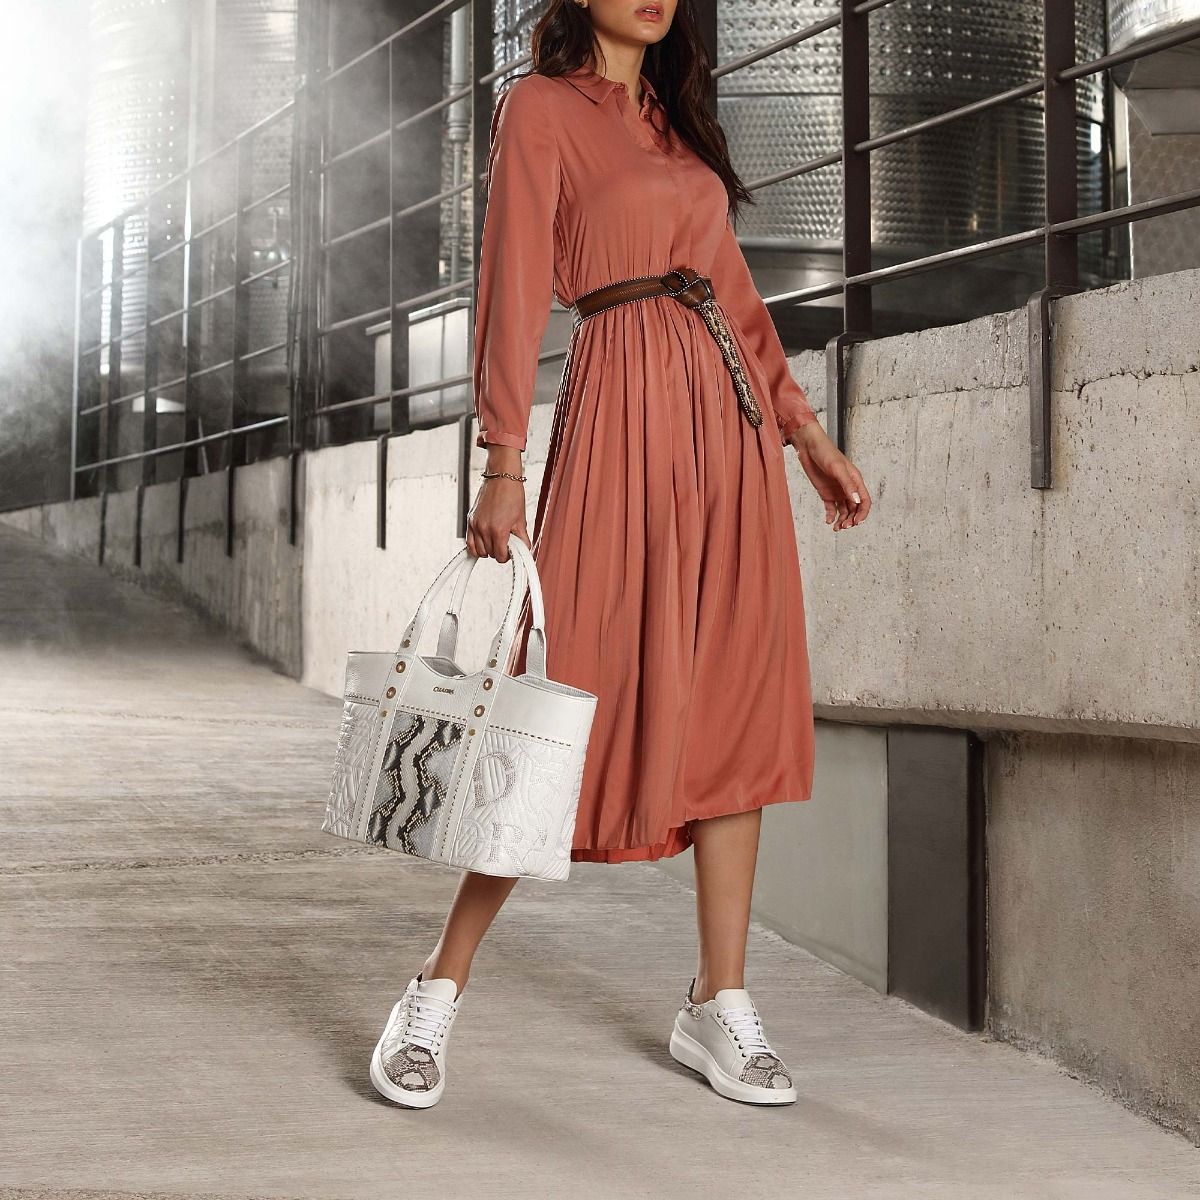 4P6TVDS - Zapatos casuales fashion de piel TAN para mujer Cuadra